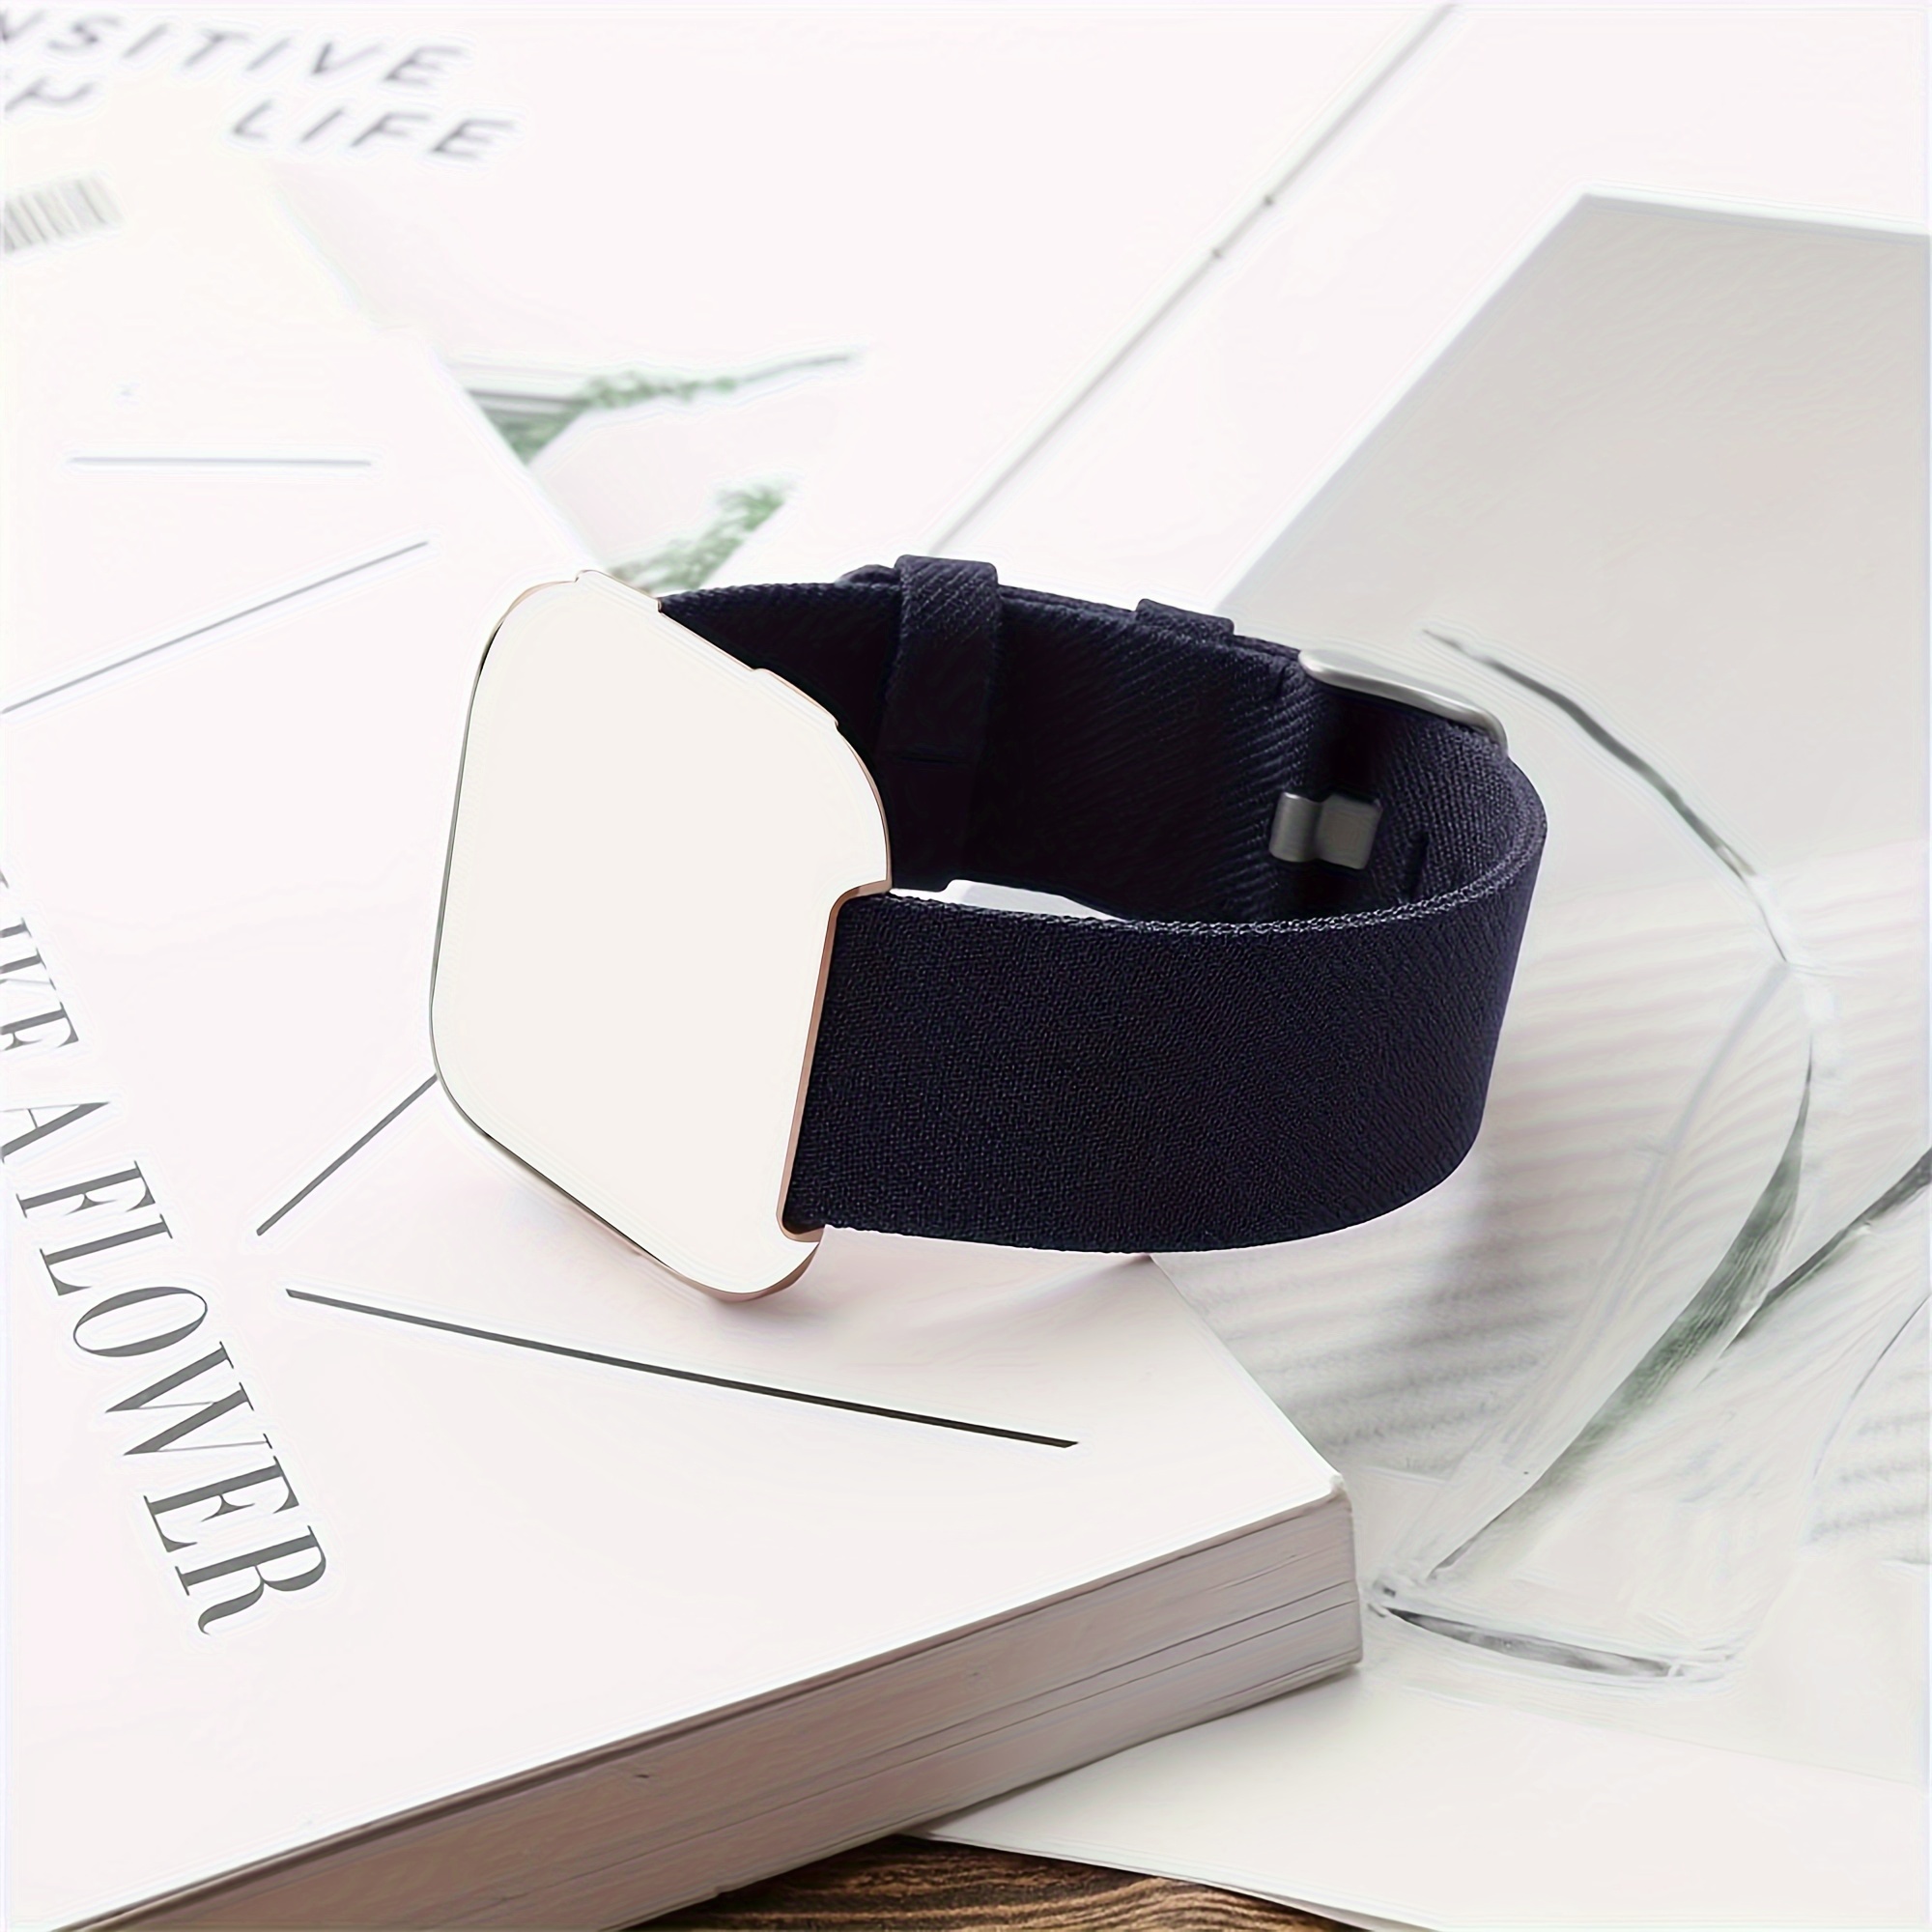  Correa de reloj elástica ajustable compatible con Fitbit Versa/Versa  2/Versa Lite Edición especial para mujeres y hombres, correa elástica de  nailon para reloj inteligente Fitbit Versa (negro) : Celulares y Accesorios